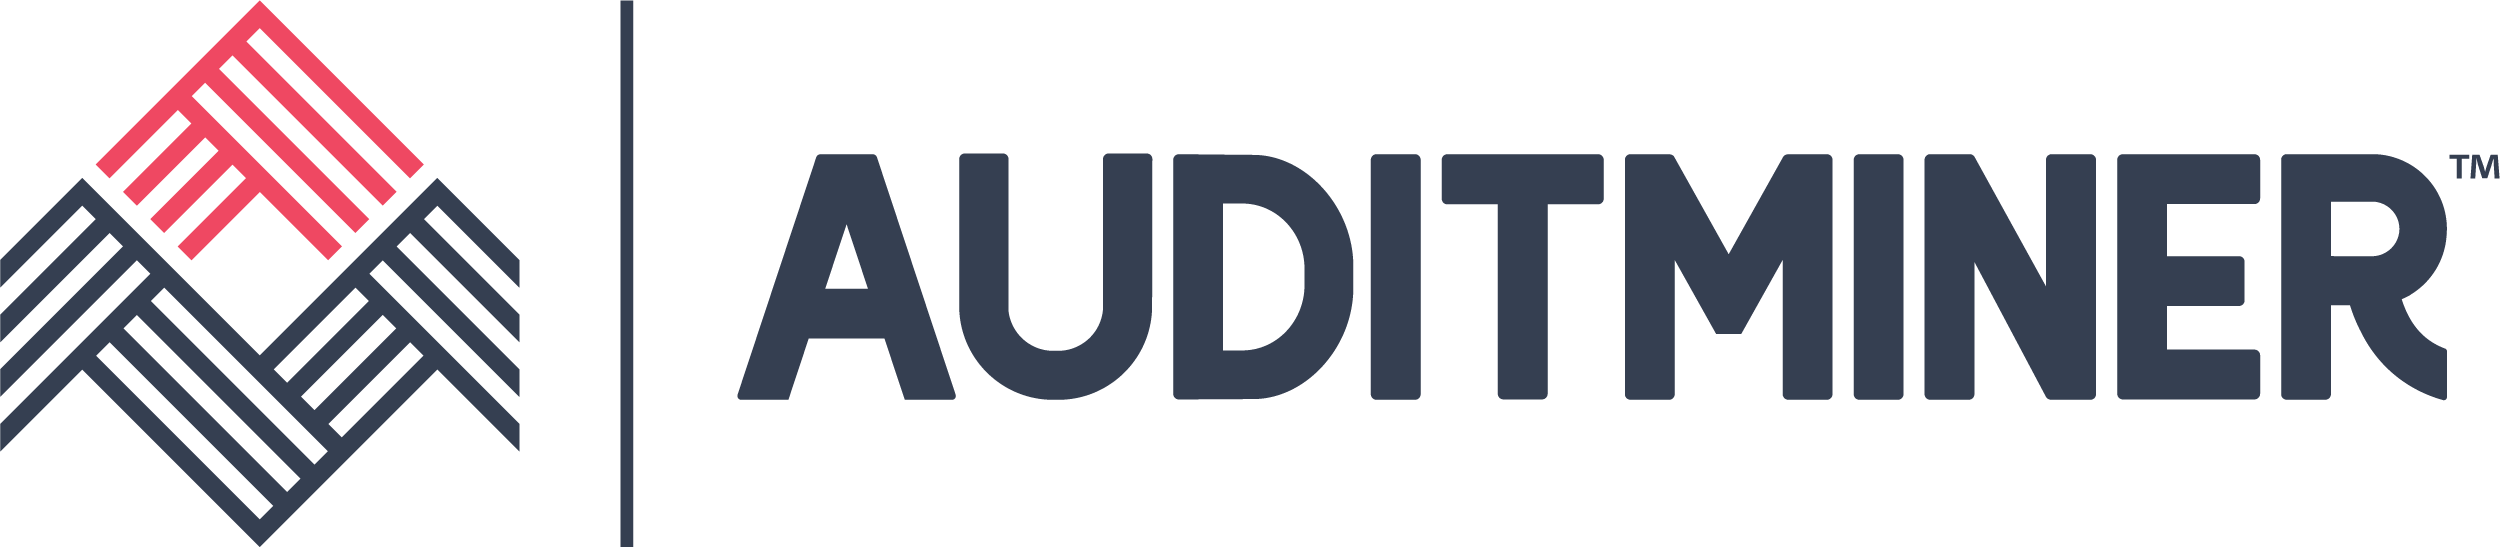 Auditminer logo